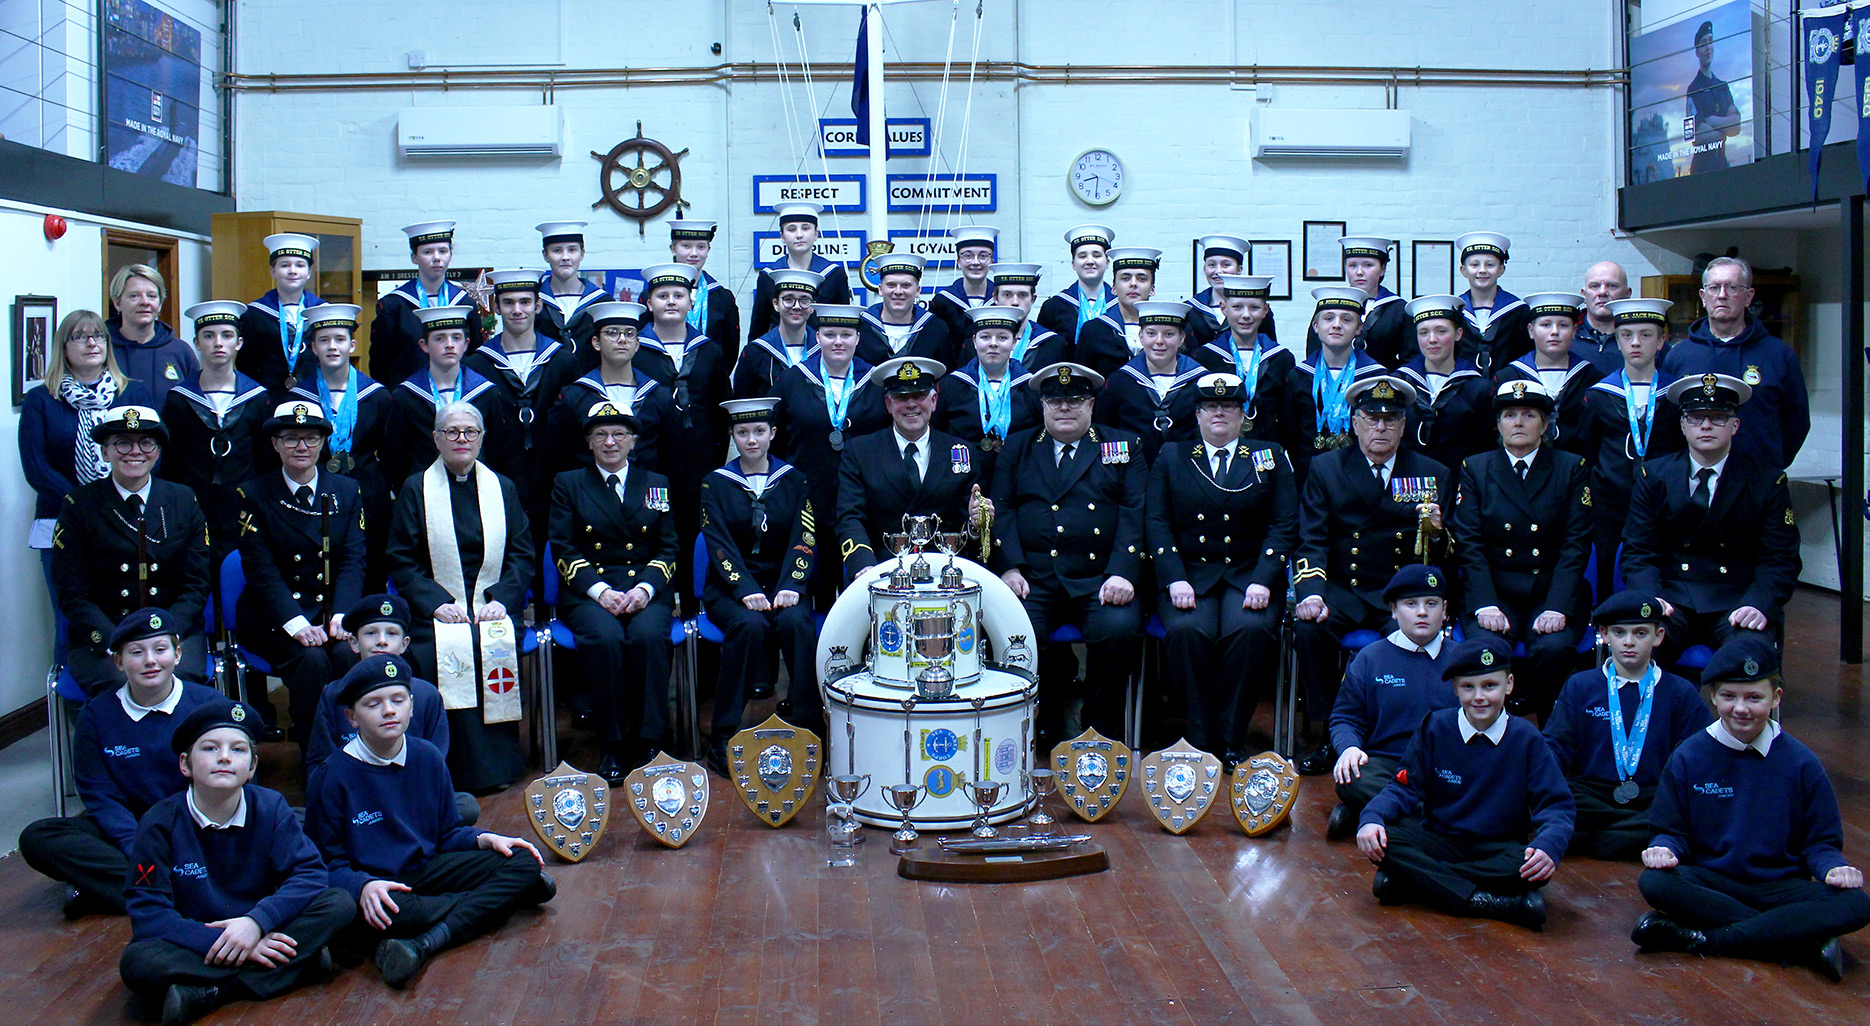 Tewkesbury Sea Cadets Ships Company